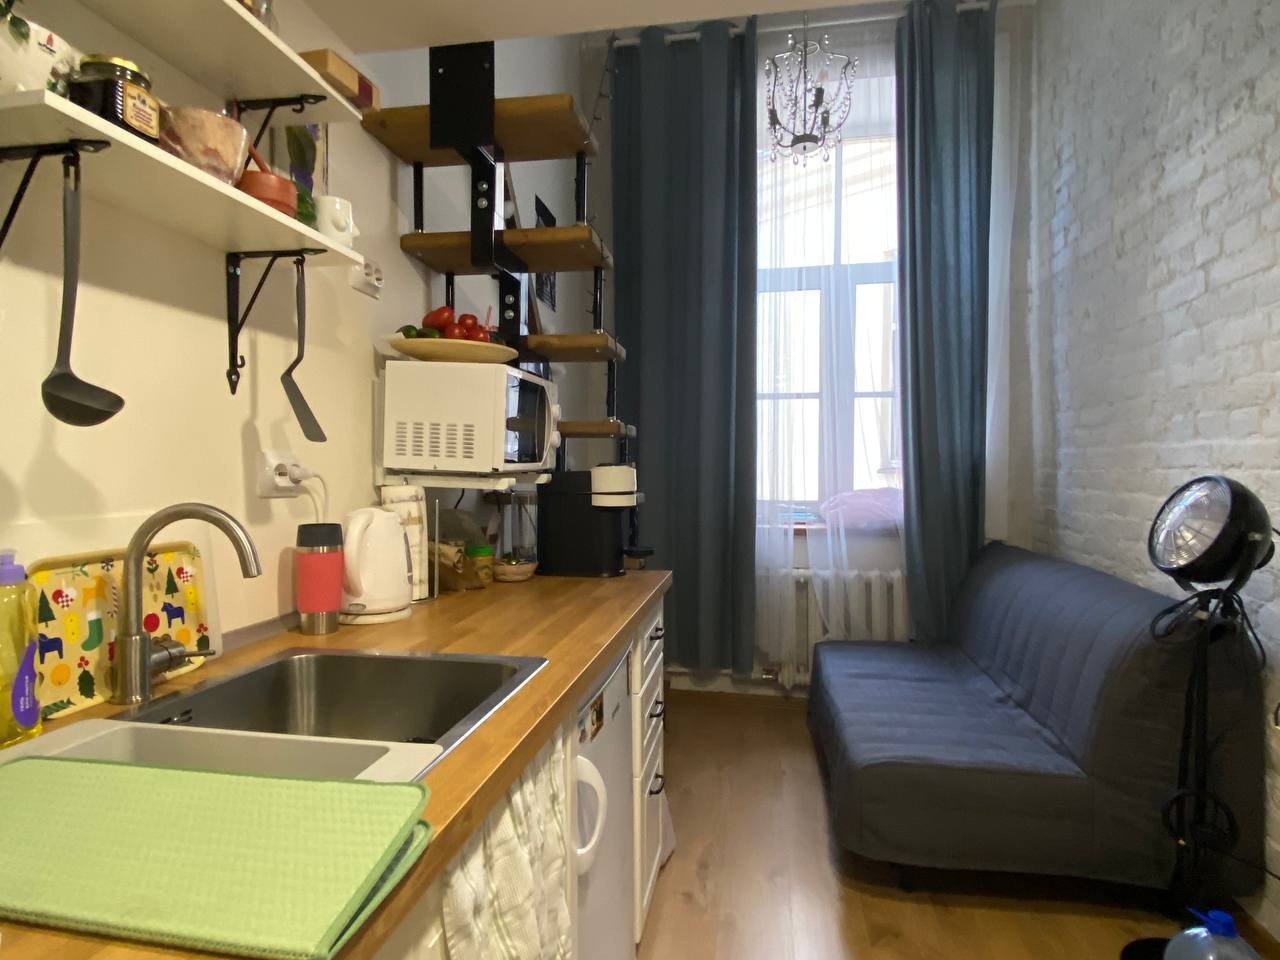 Как сделать дизайн маленькой квартиры-студии 17 кв.м. Разбираем на реальном примере.